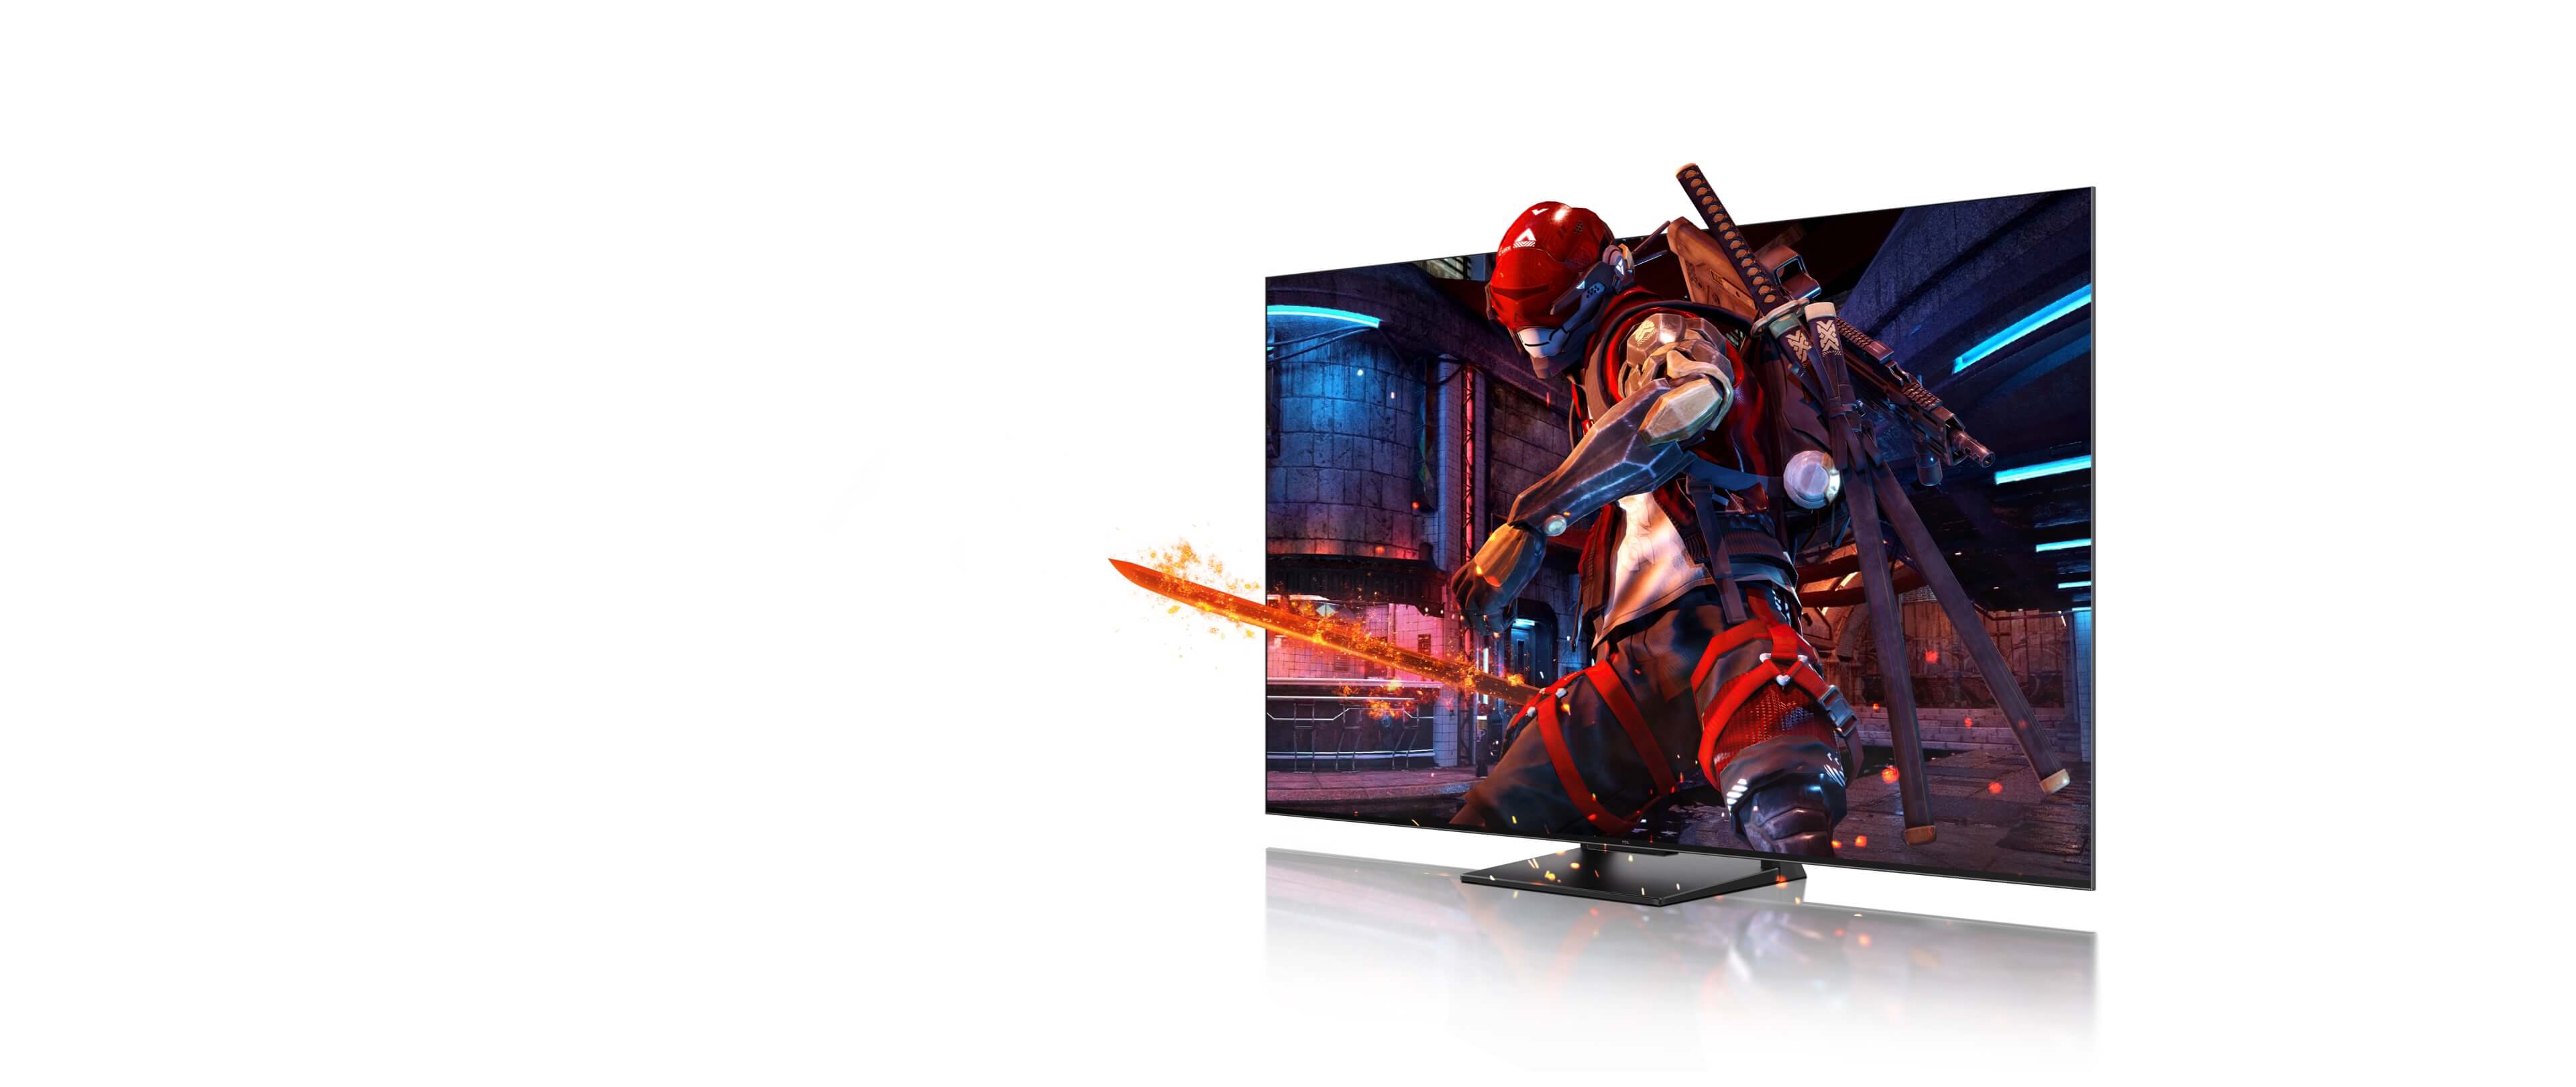 南宫ng·28 4K QLED TV <br>Game Master Pro 2.0